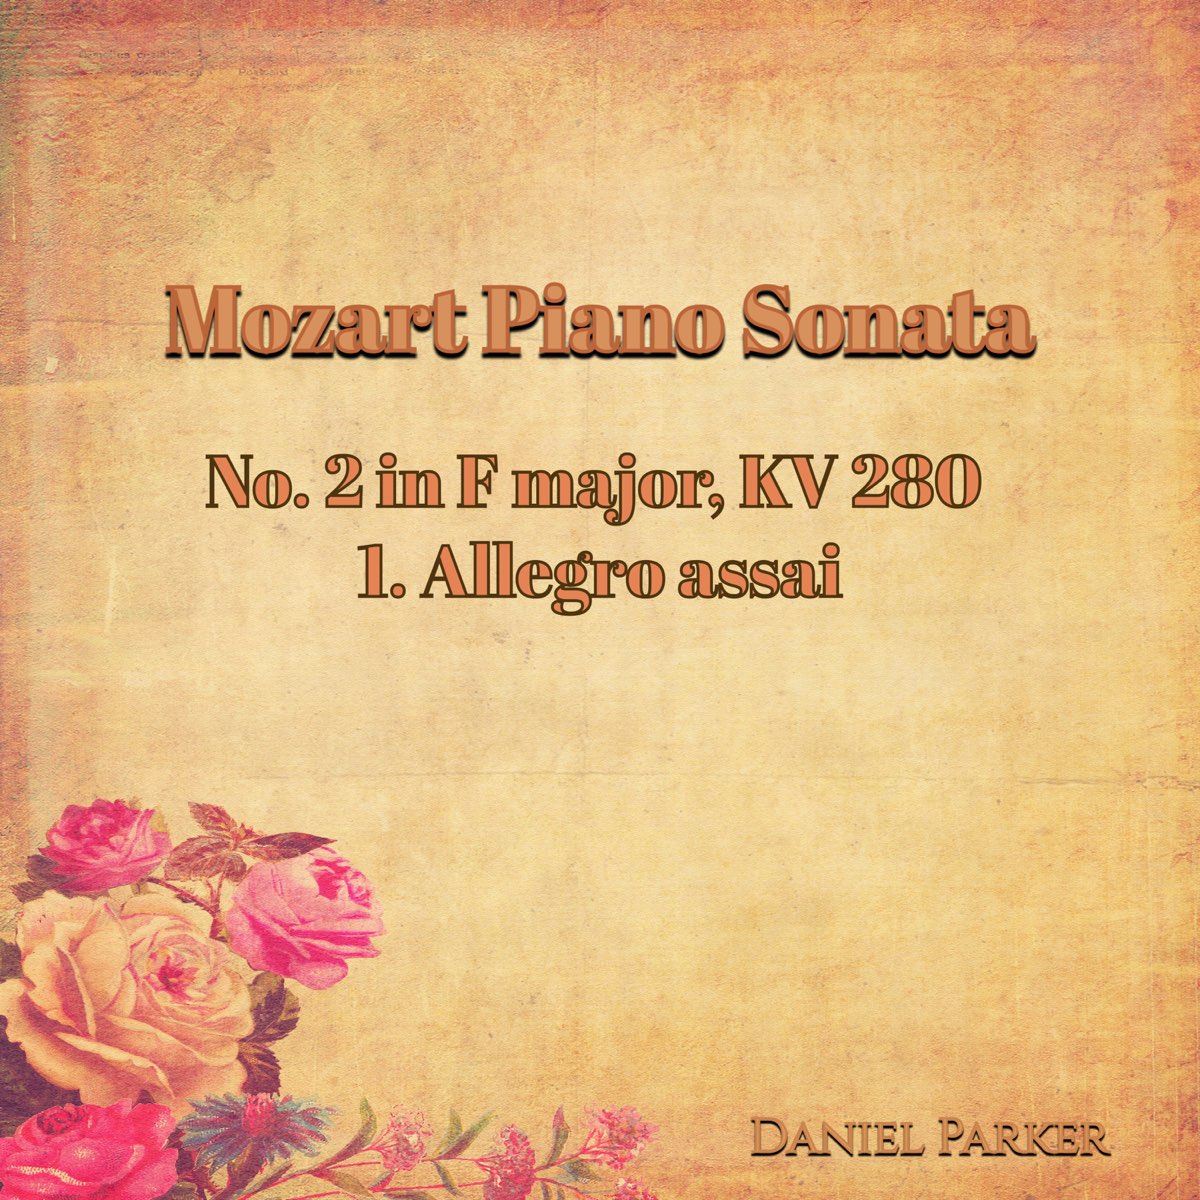 Mozart Piano Sonata No. 2 In F Major, Kv 280 - 1. Allegro Assai - Single by  Daniel Parker on Apple Music